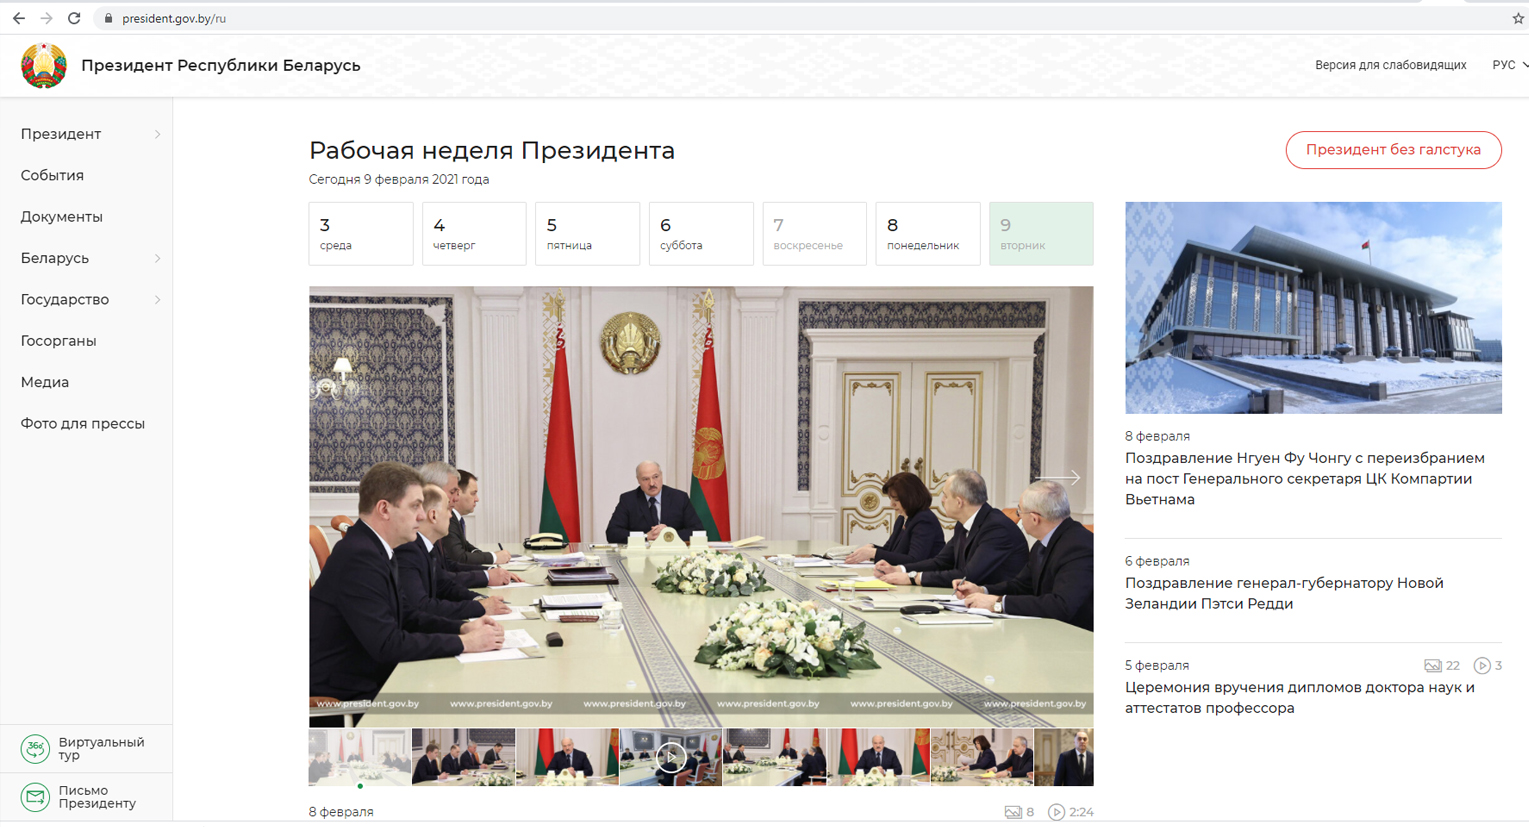 Представлен новый официальный интернет-портал Президента Беларуси